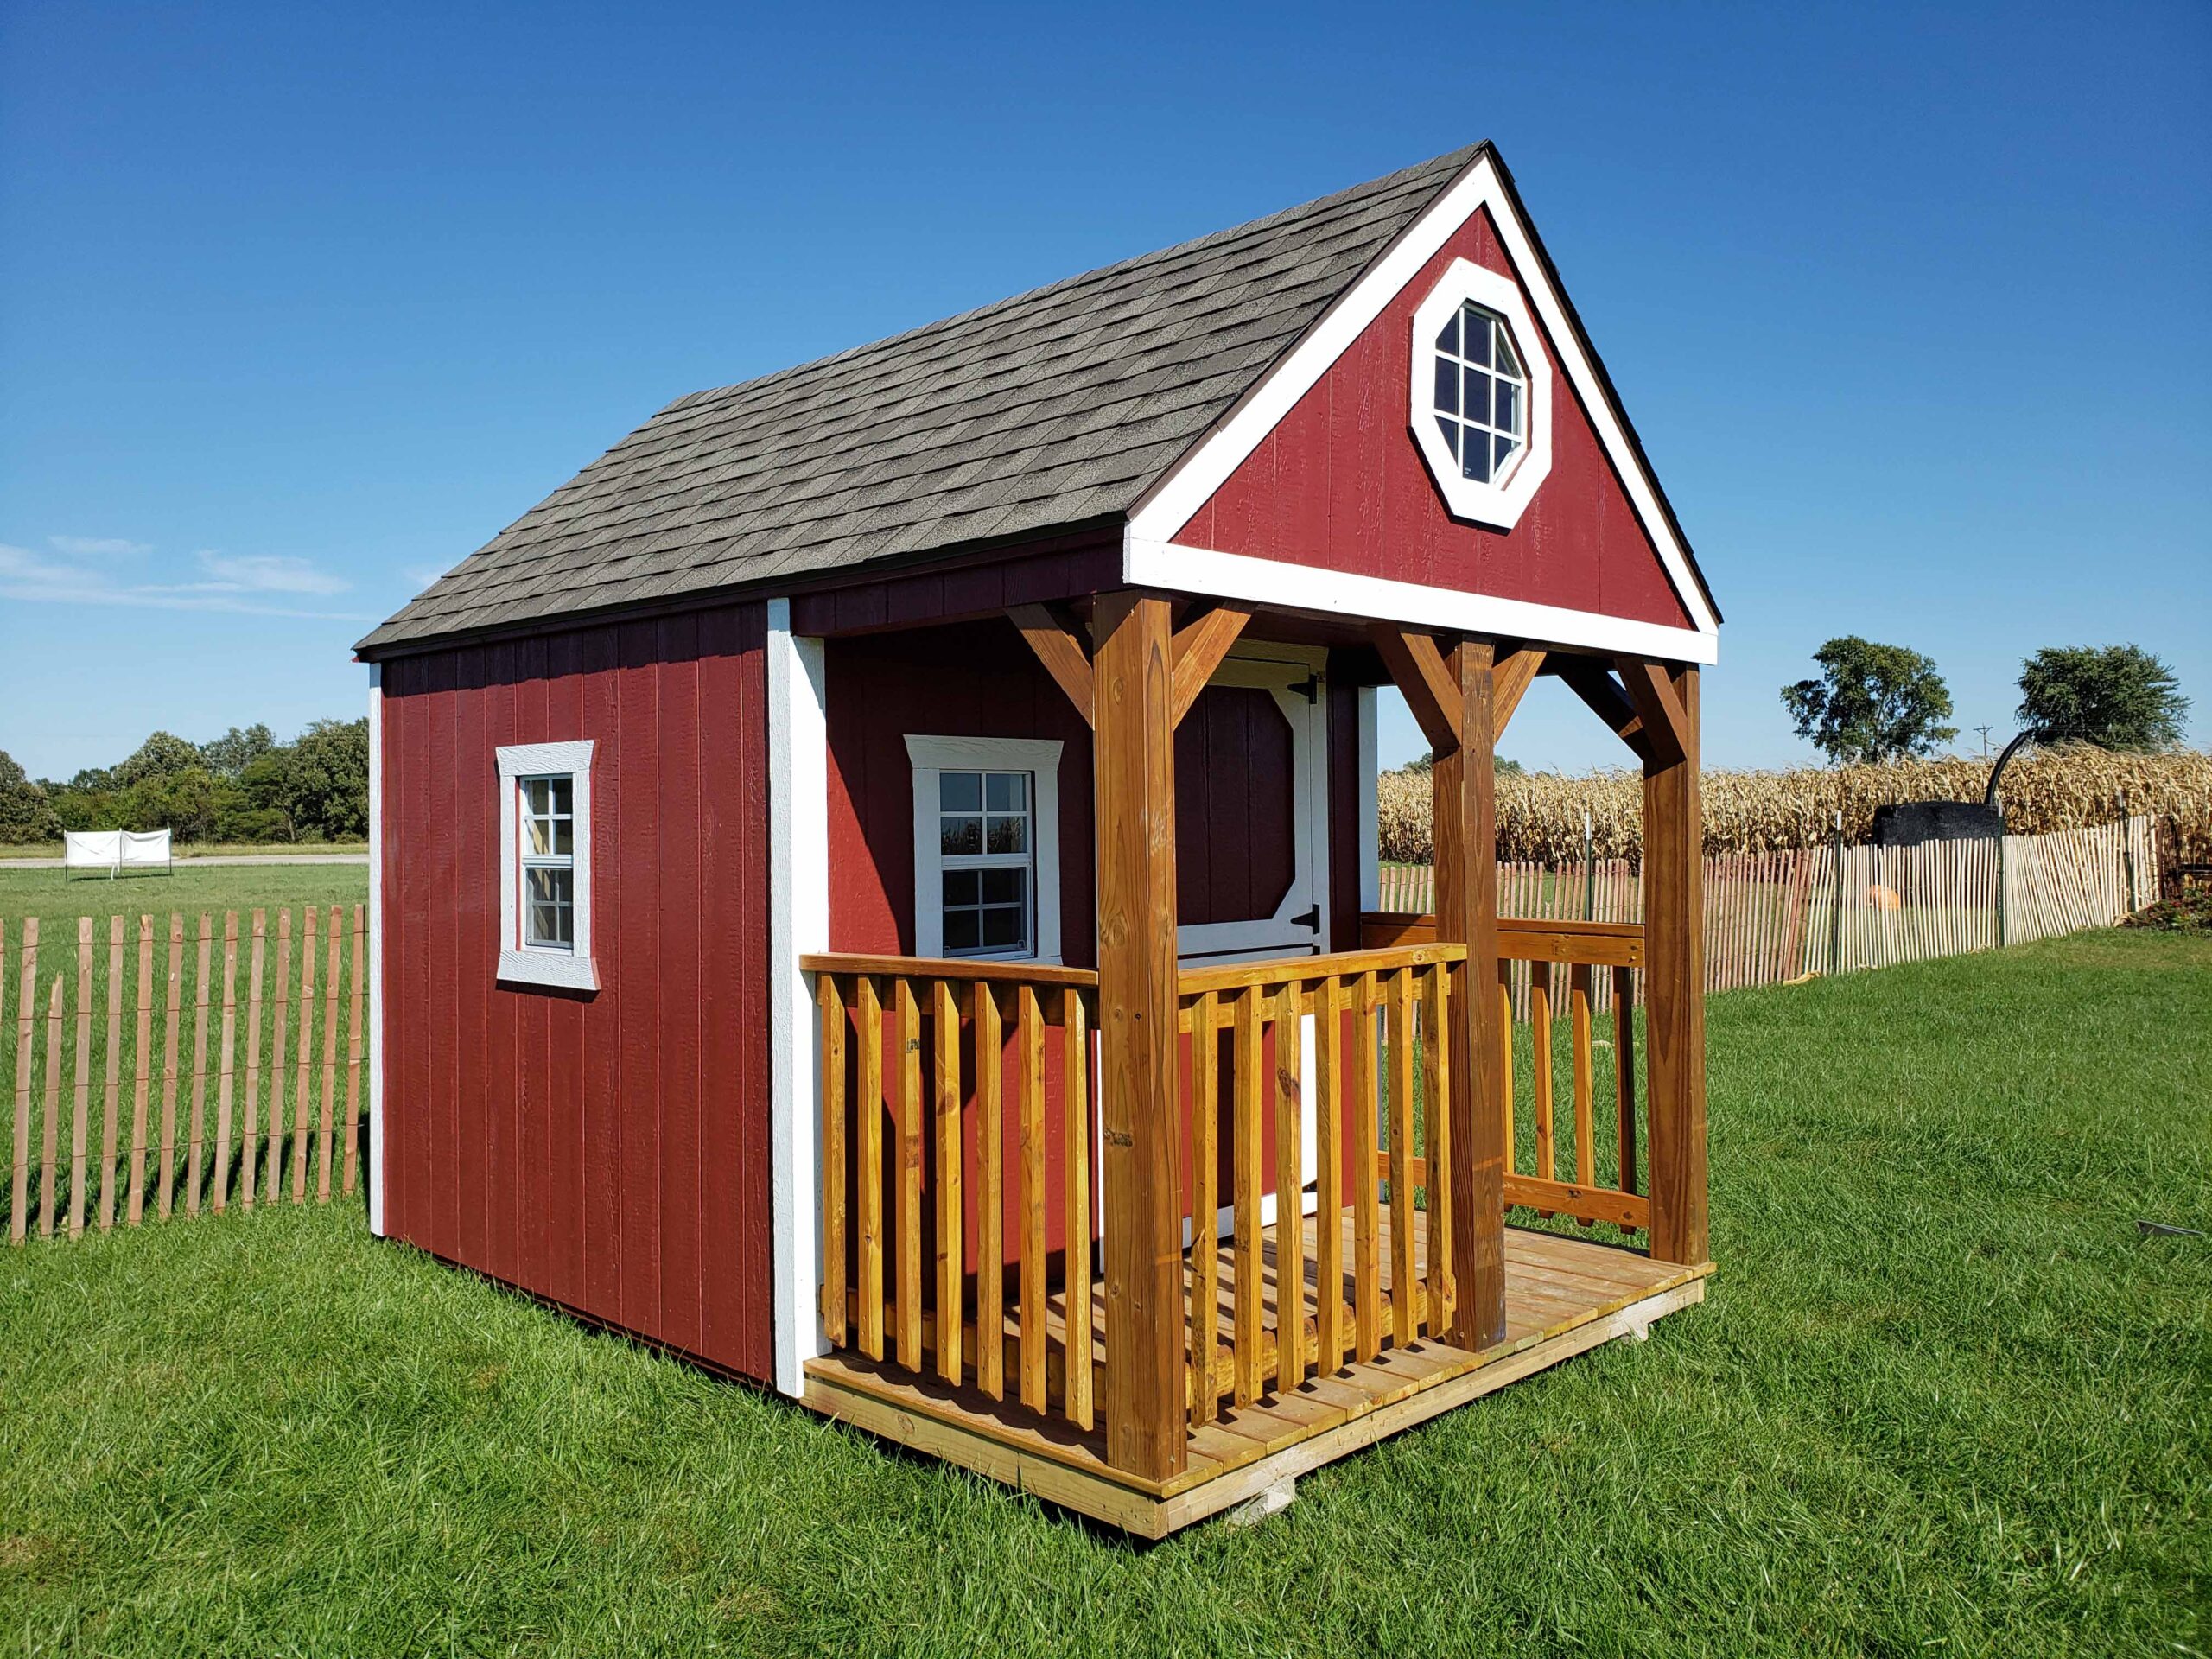 Custom shed turned into a backyard playhouse